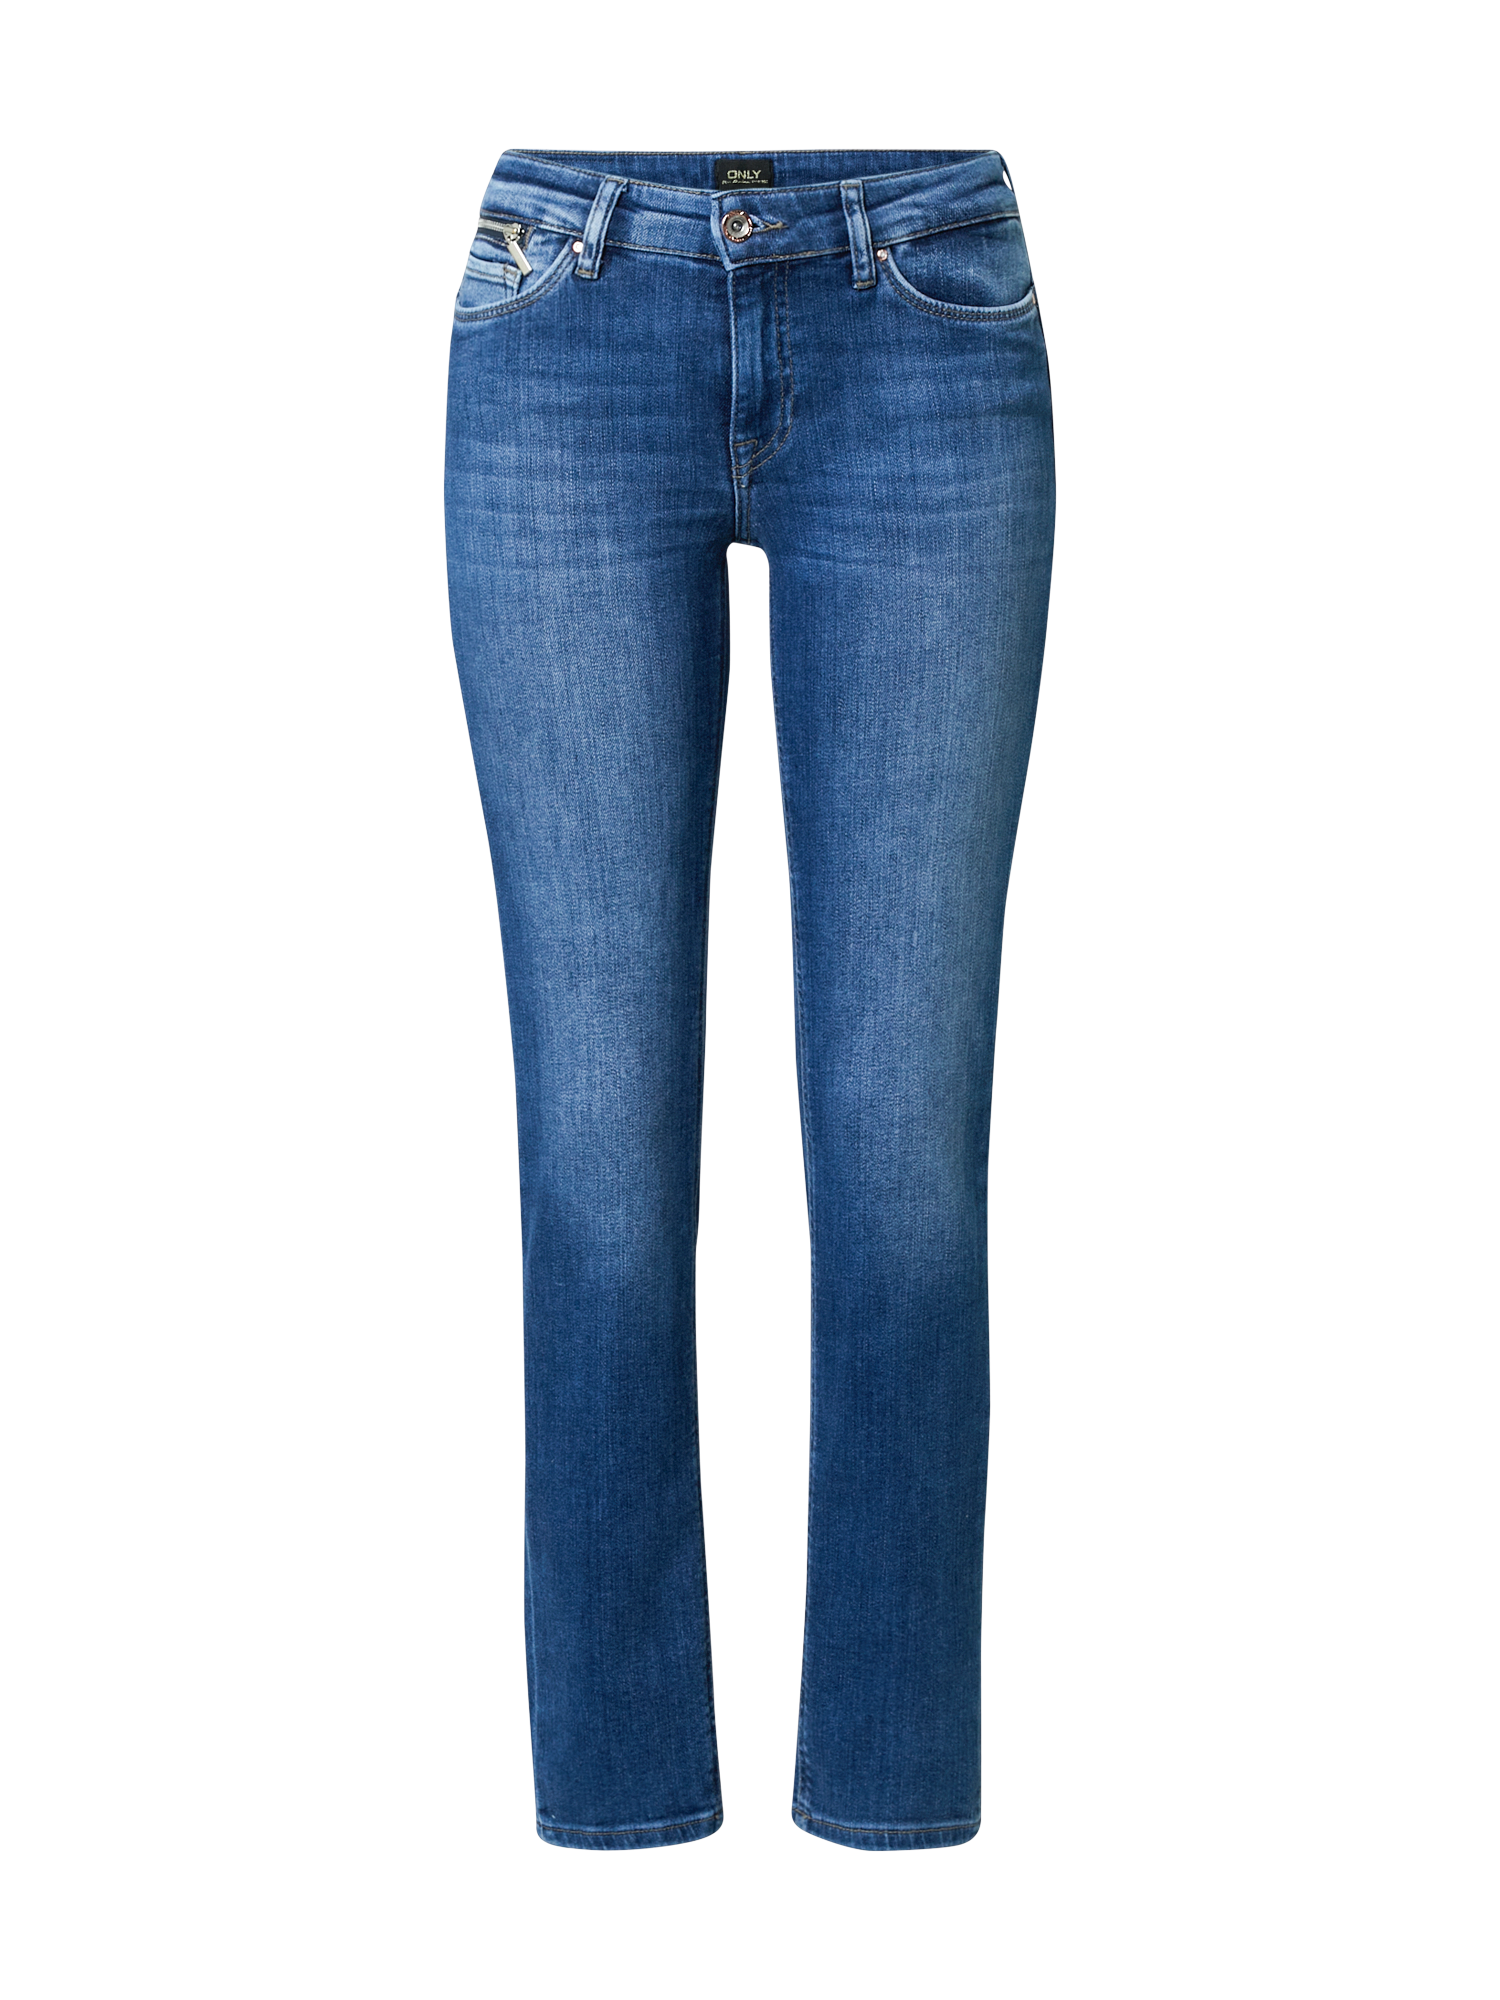 Nuovi arrivi xI1FE ONLY Jeans EVA in Blu 